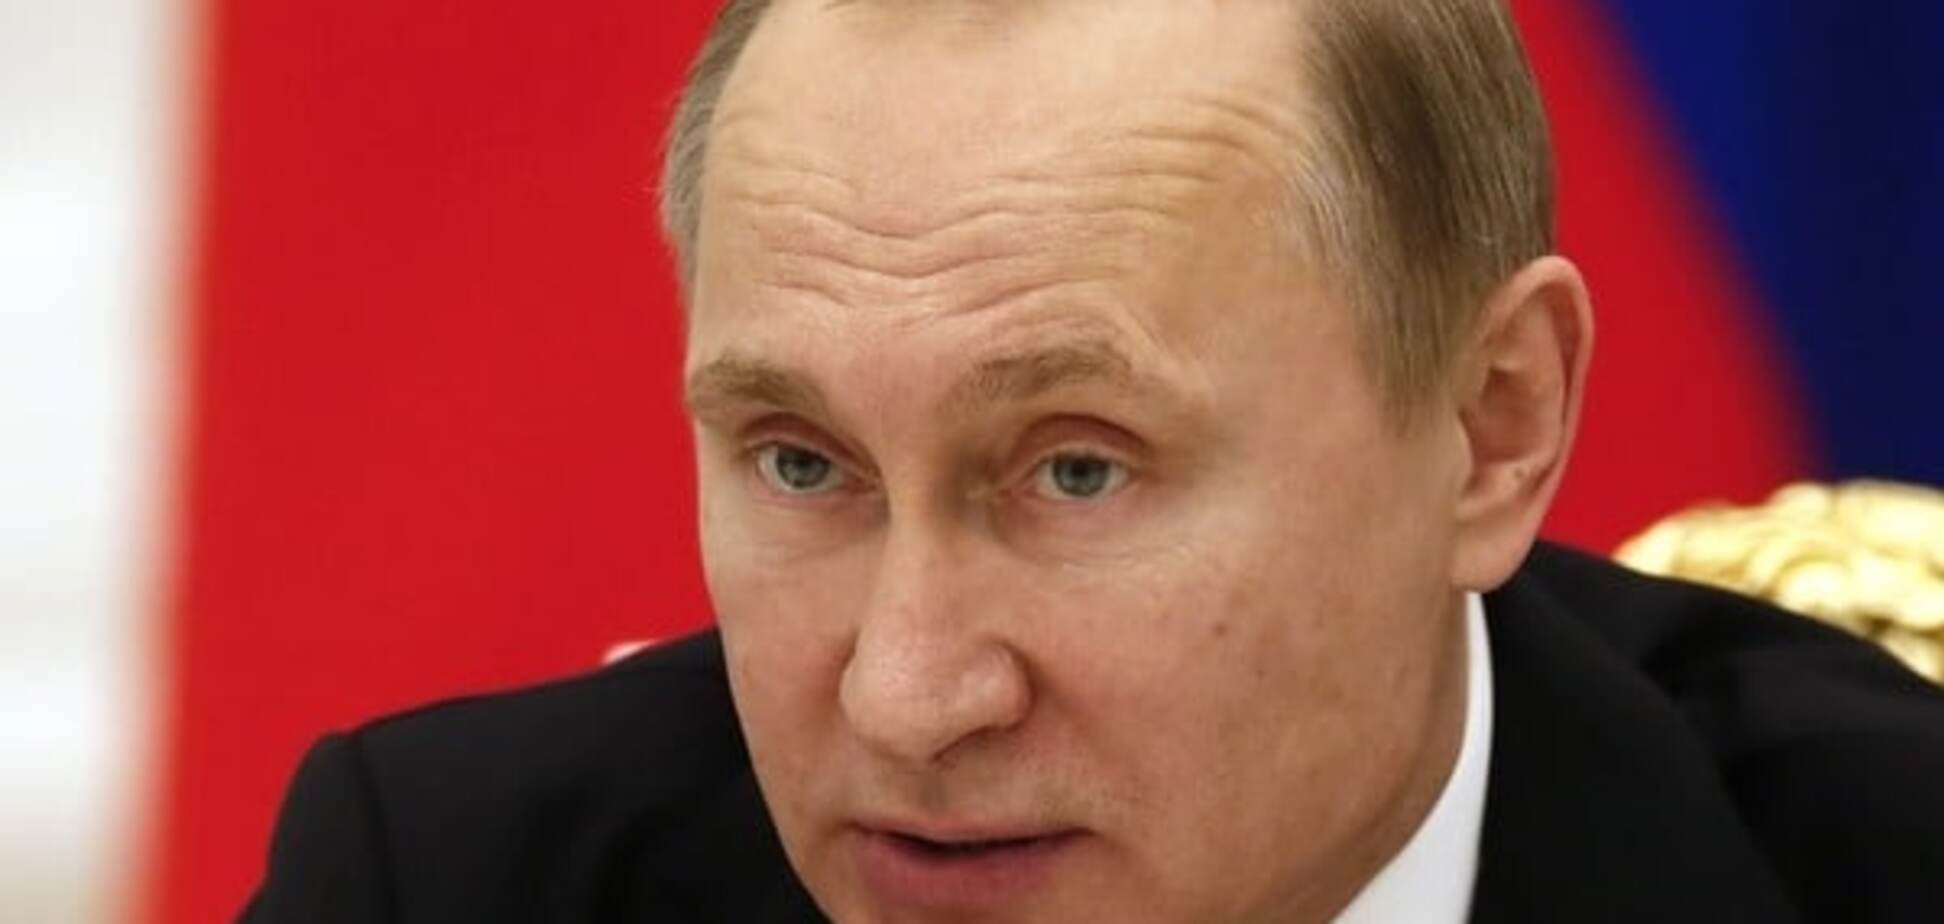 Libération о деле Литвиненко: Европа получила шанс надавить на Путина